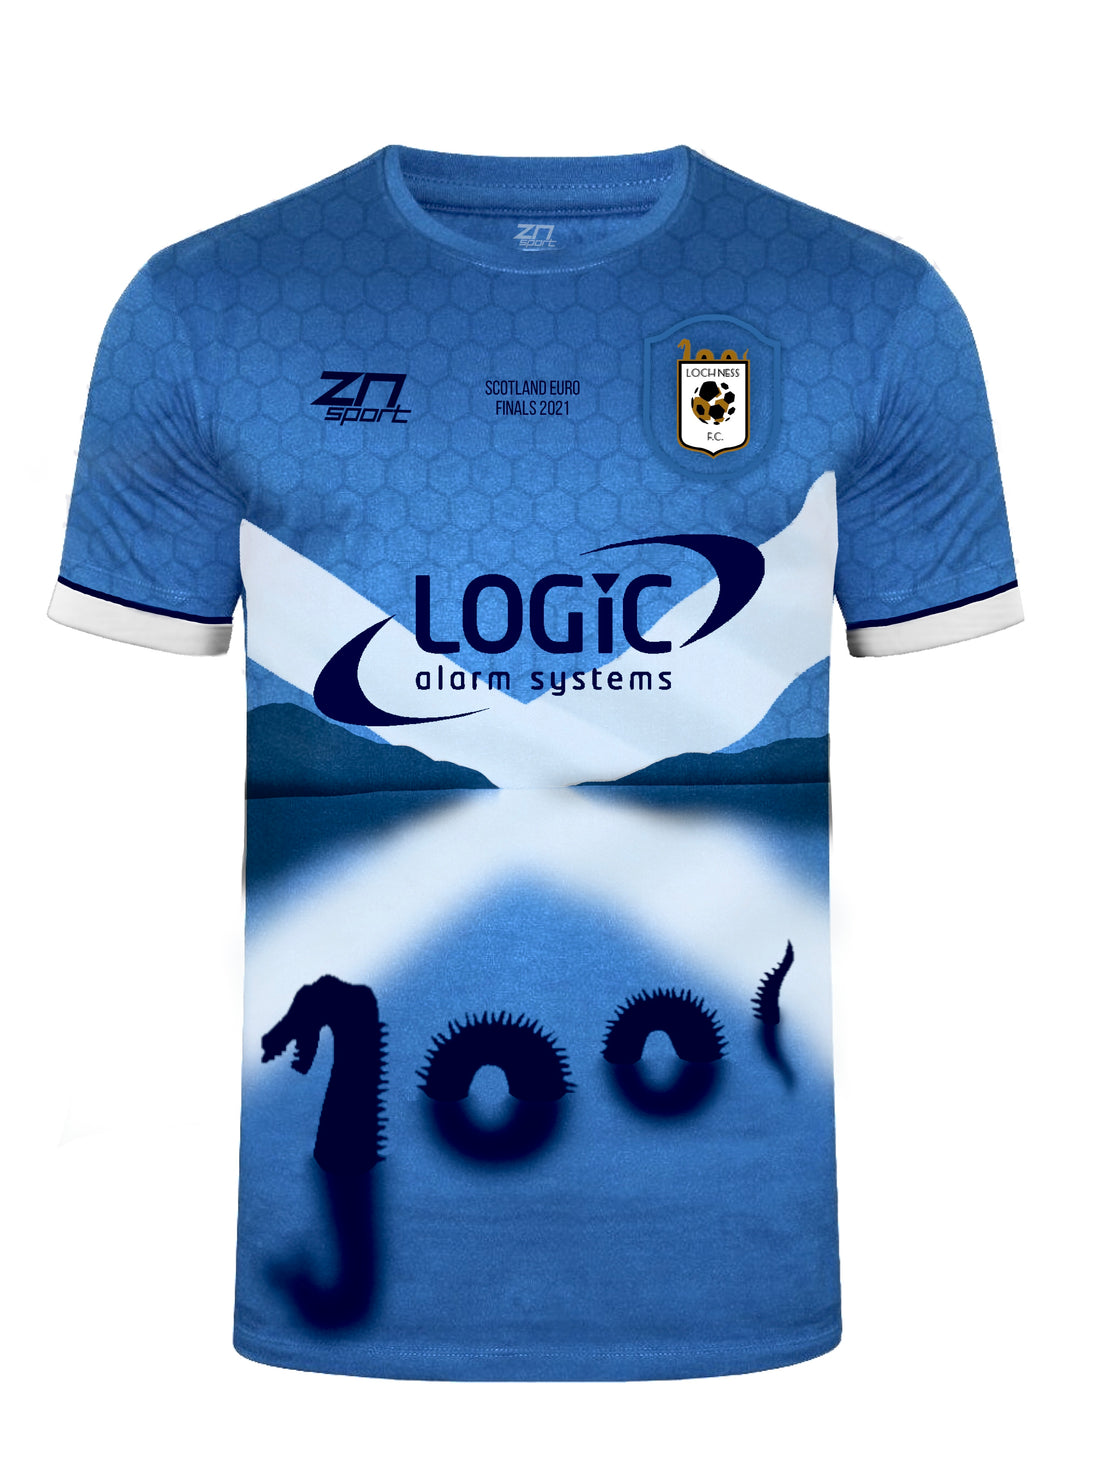 LNFC Special Edition Euro shirt